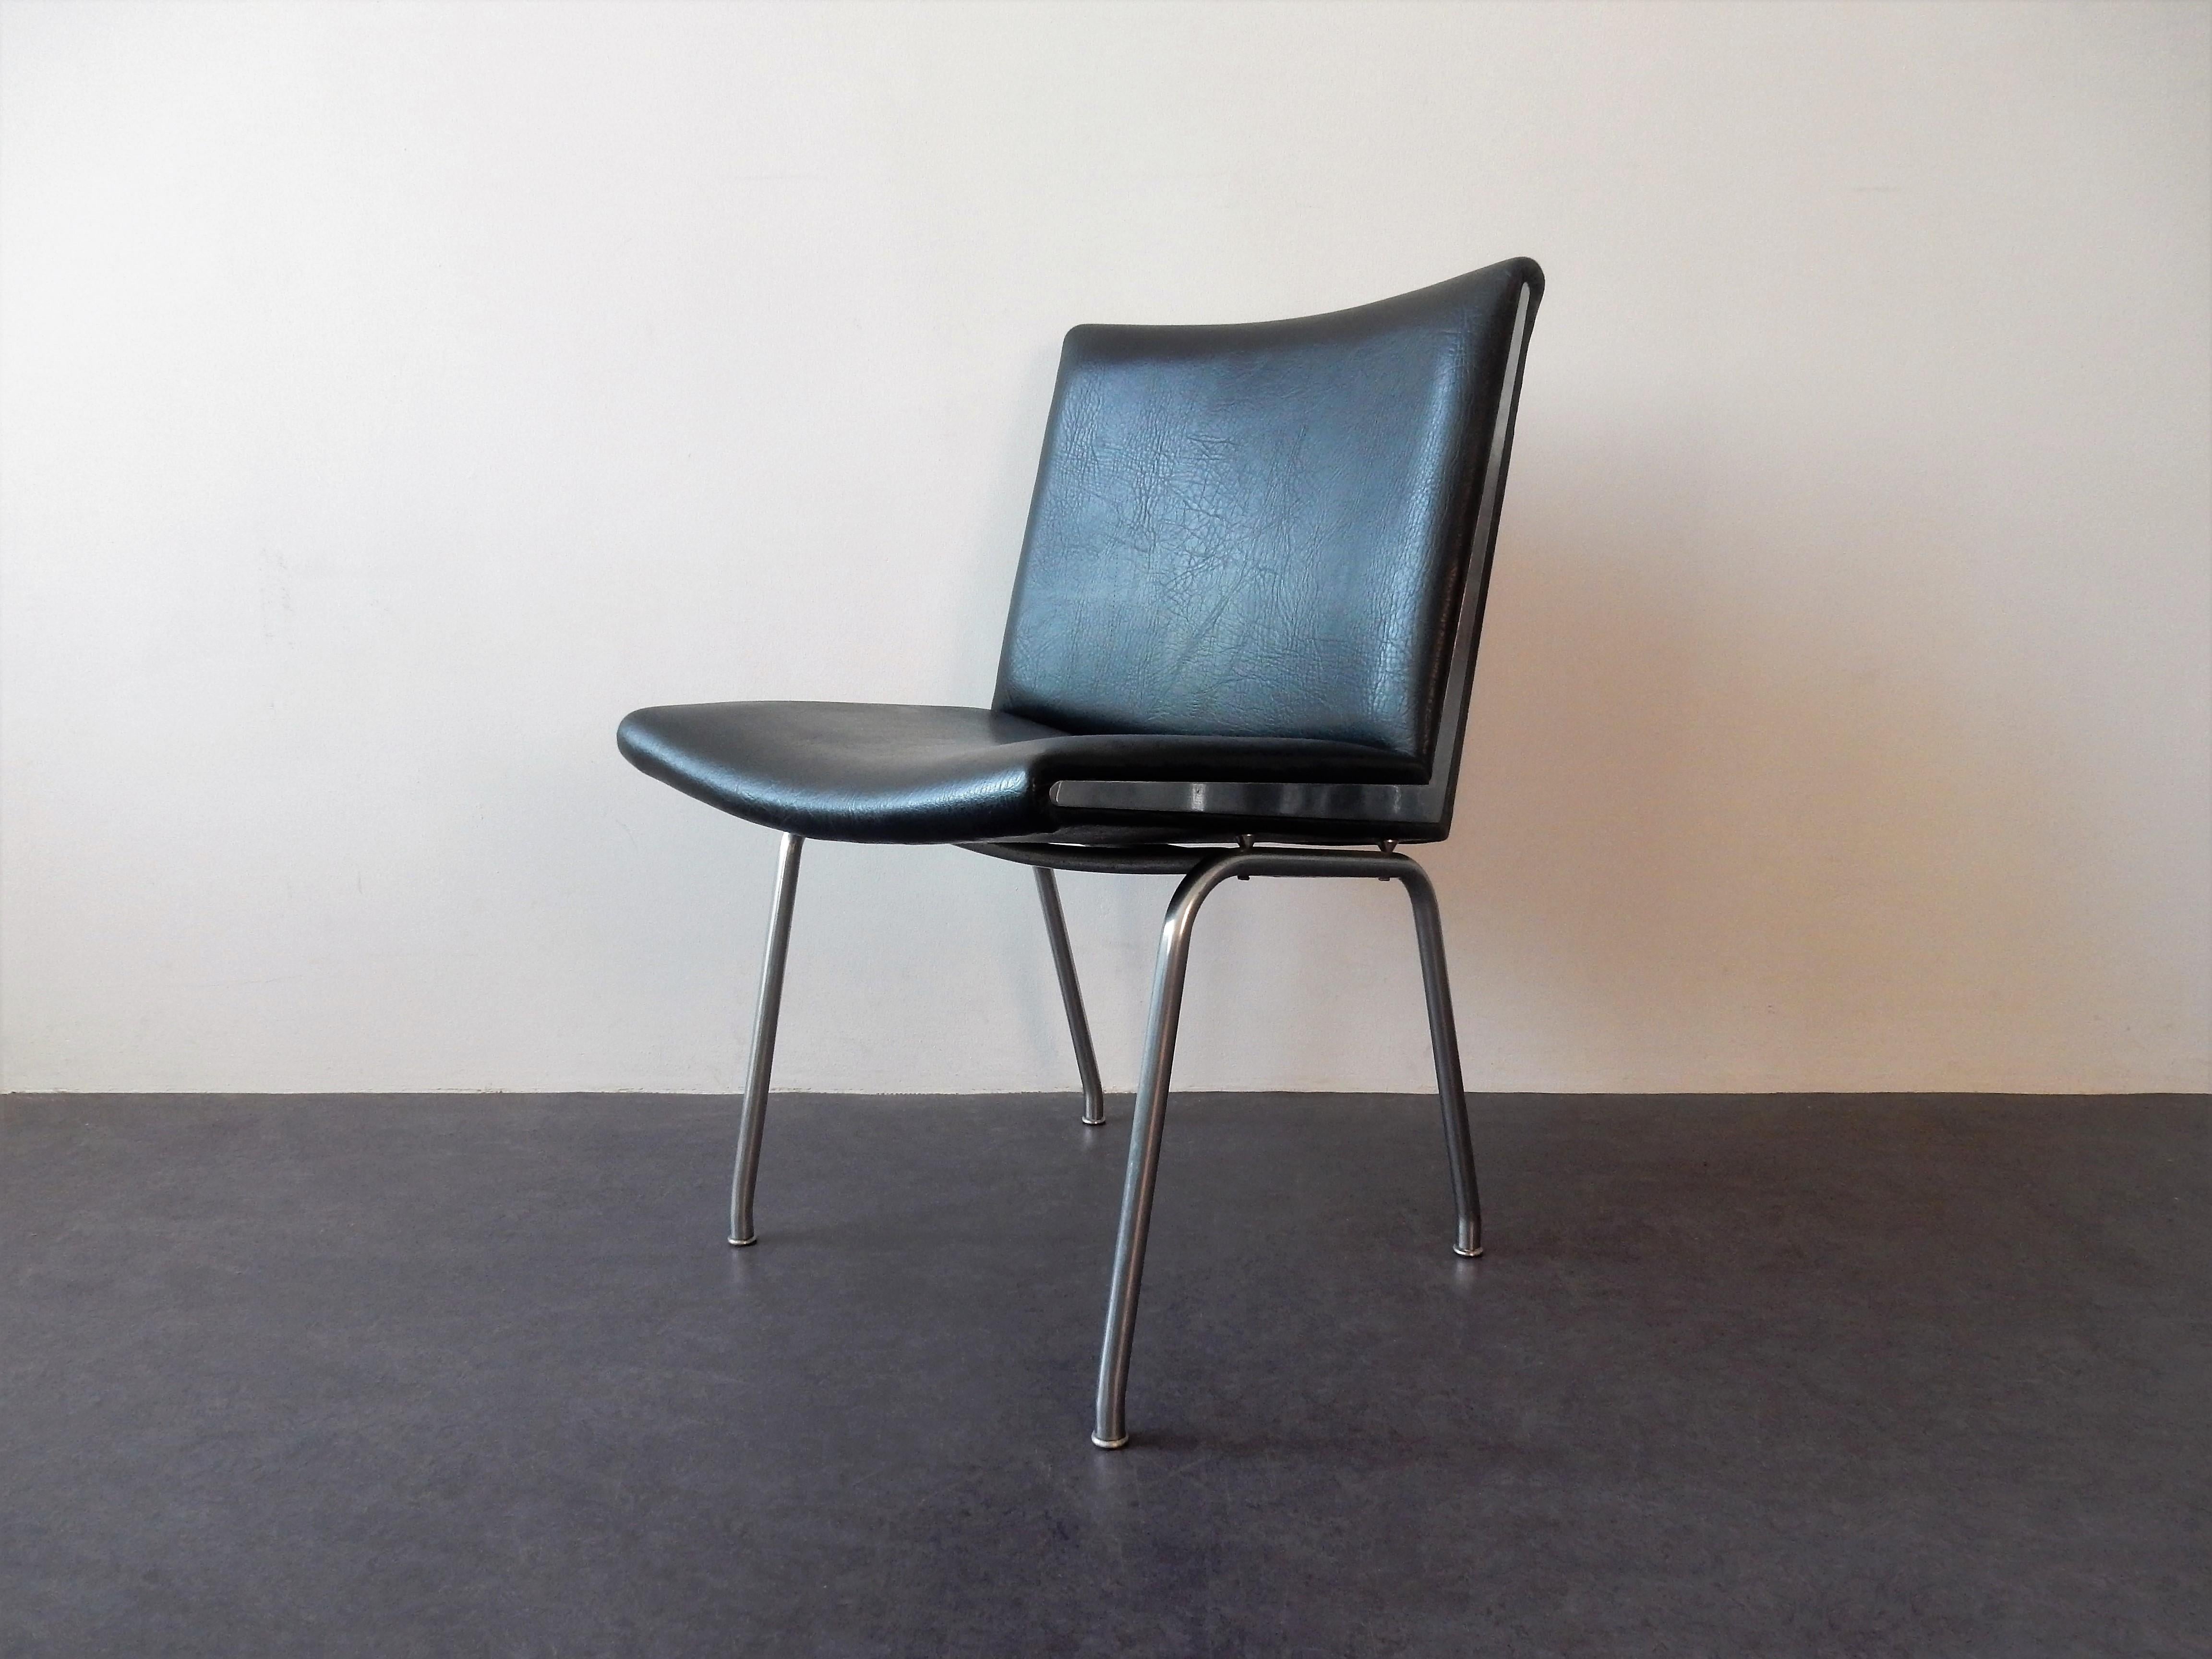 Der Airport-Stuhl, Modell AP40, ist ein Entwurf aus dem Jahr 1959 von Hans J. Wegner für den Flughafen Kastrup in Kopenhagen. Es wurde von der Firma AP Stolen produziert. Diese Stühle sind aus verchromtem Stahl und schwarzem Kunstleder. Sie sind in